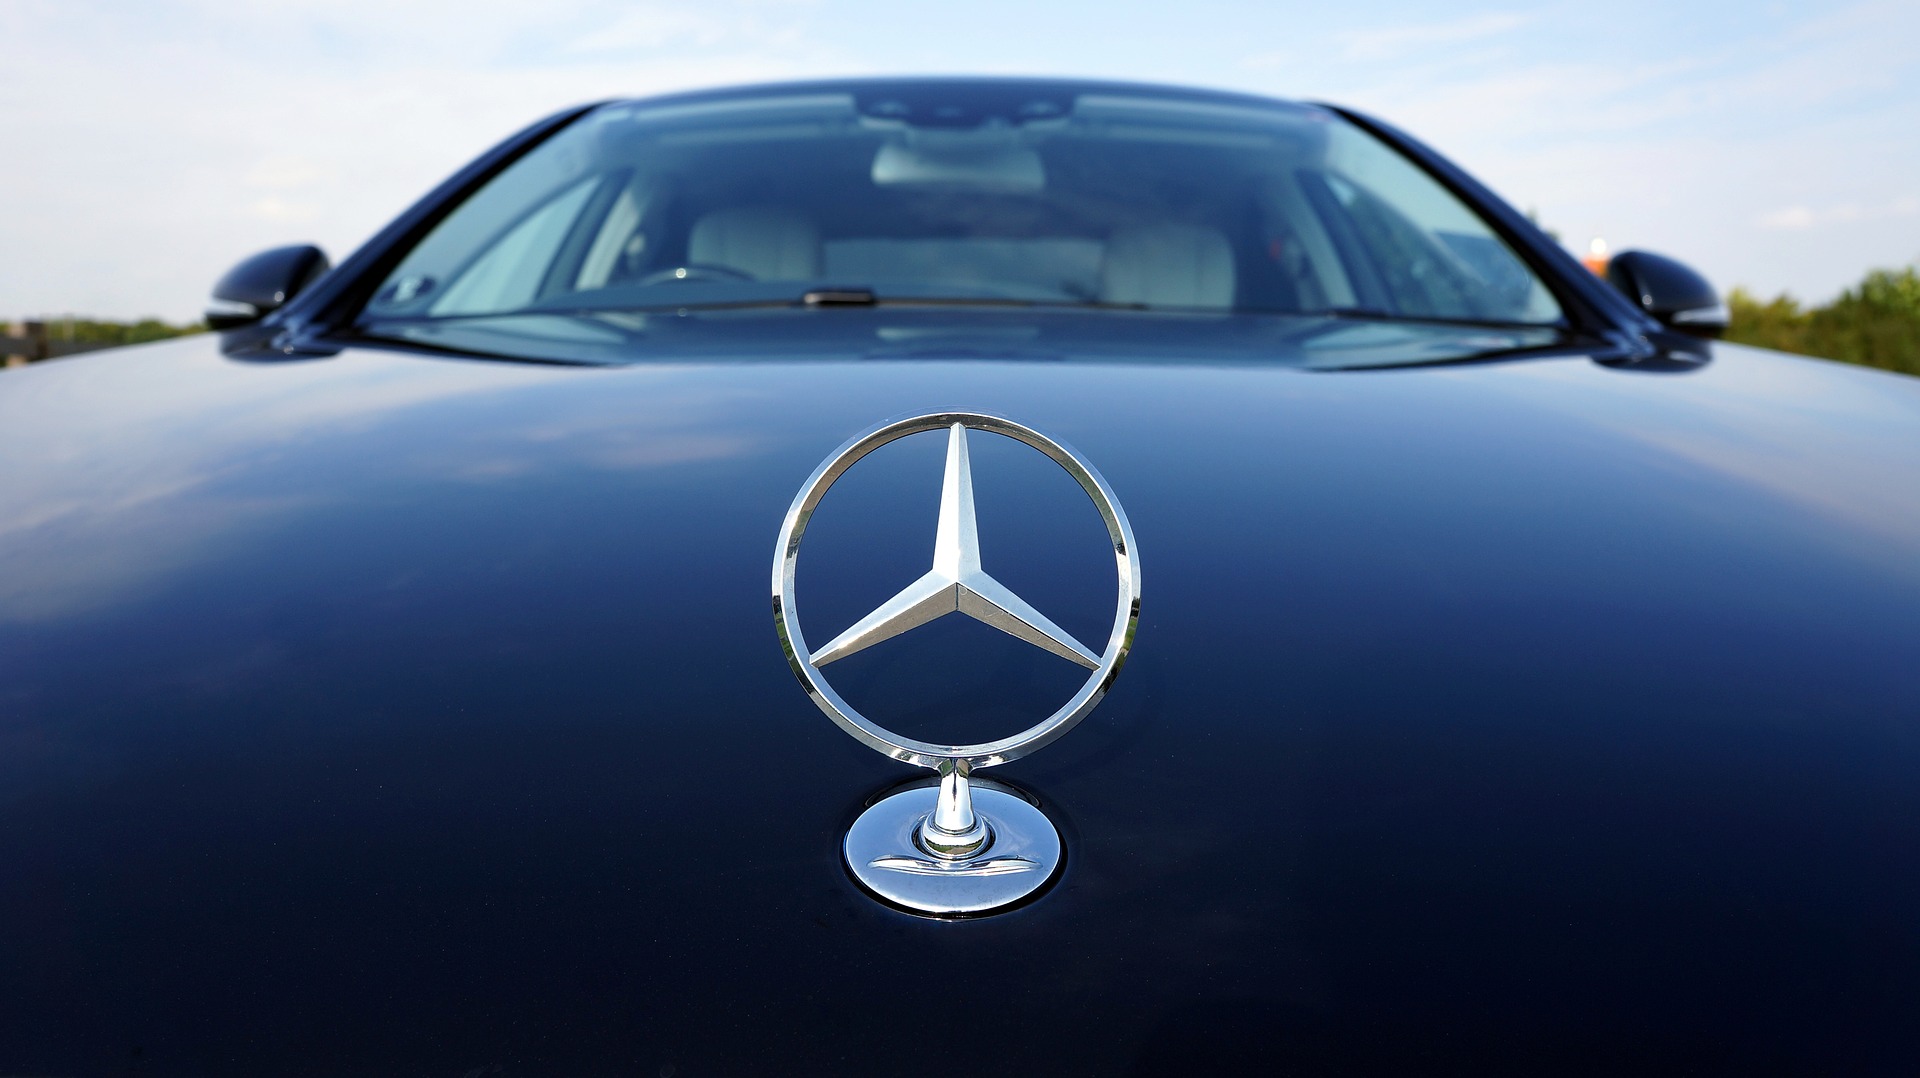 Marcas de carro: símbolo da Mercedes-Benz